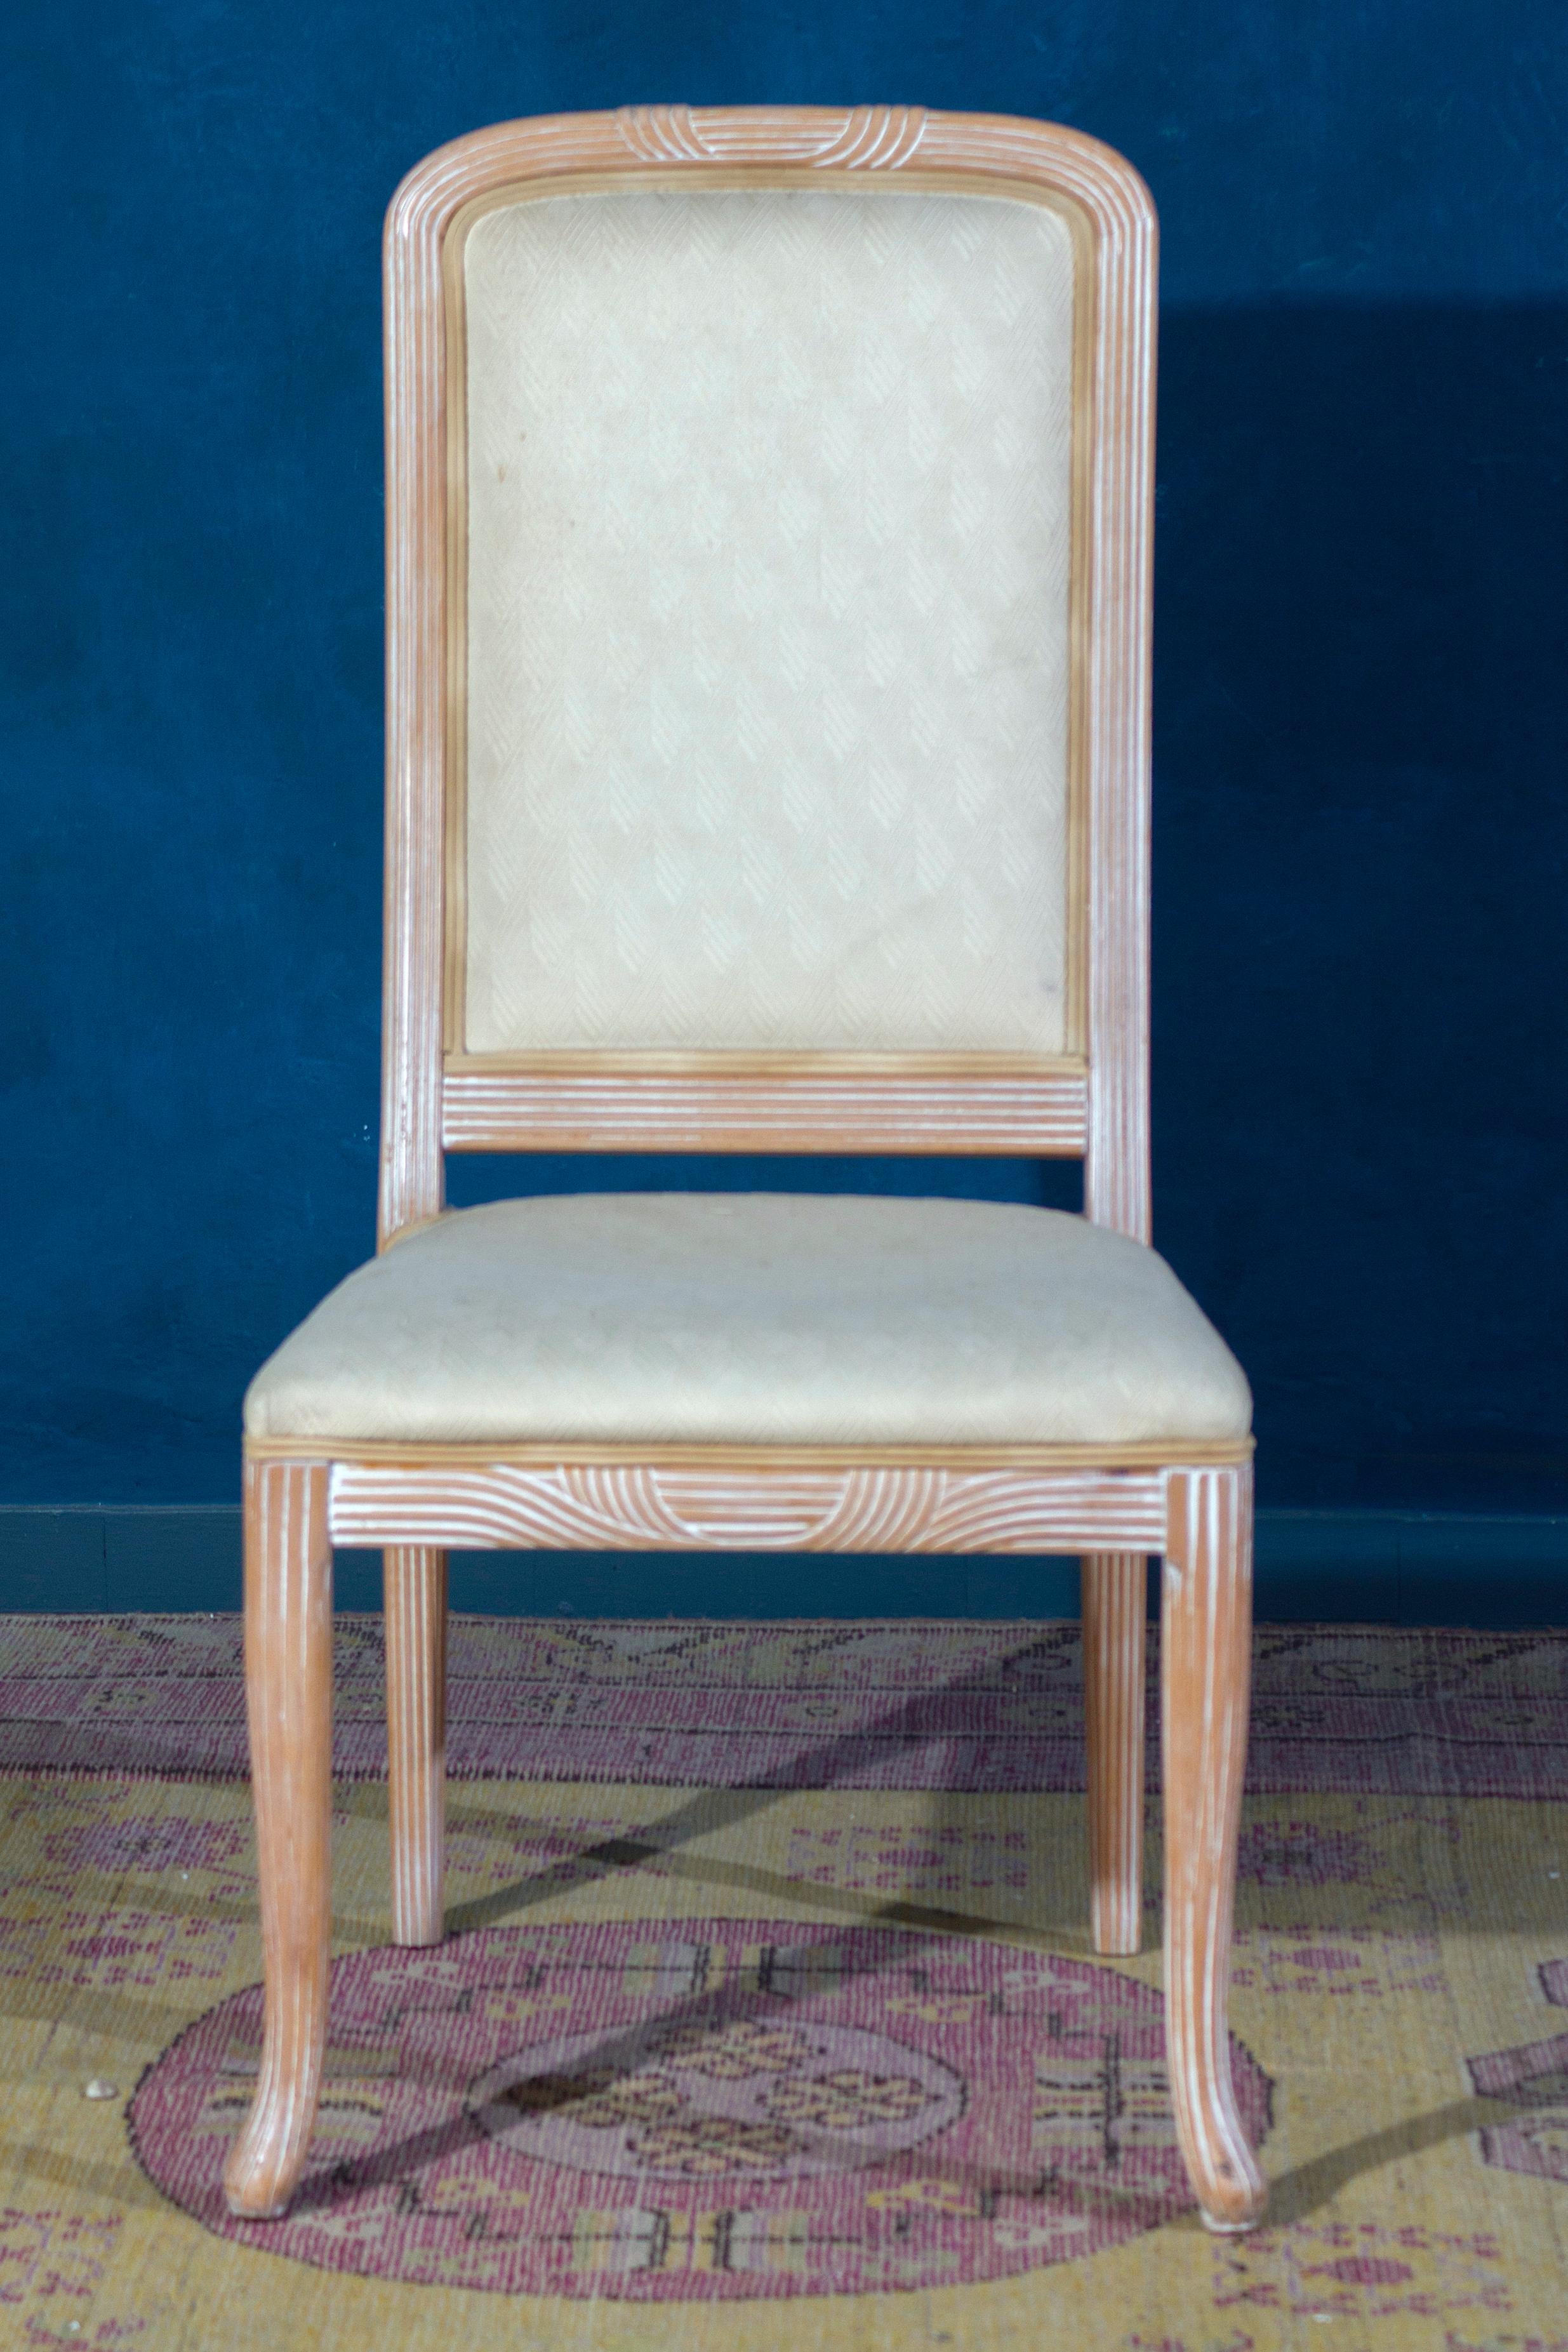 Ensemble de huit chaises italiennes en bois de décapè blanc avec des sièges en tapisserie blanche.
Fabriqué en Italie 1970'. Le bois est en parfait état vintage. La sellerie est en très bon état avec seulement l'usure du temps. 
Chaque chaise a été